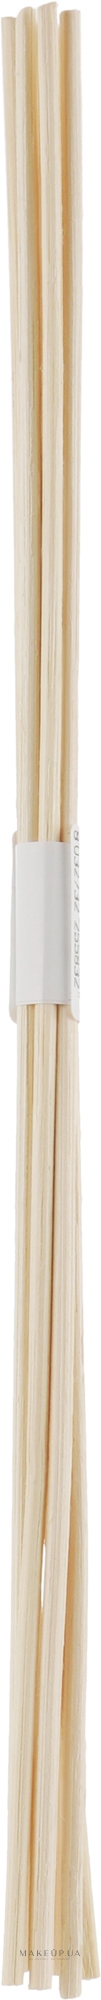 Палочки для аромадиффузора, белые (без упаковки), 30 см - Hypno Casa — фото 7шт